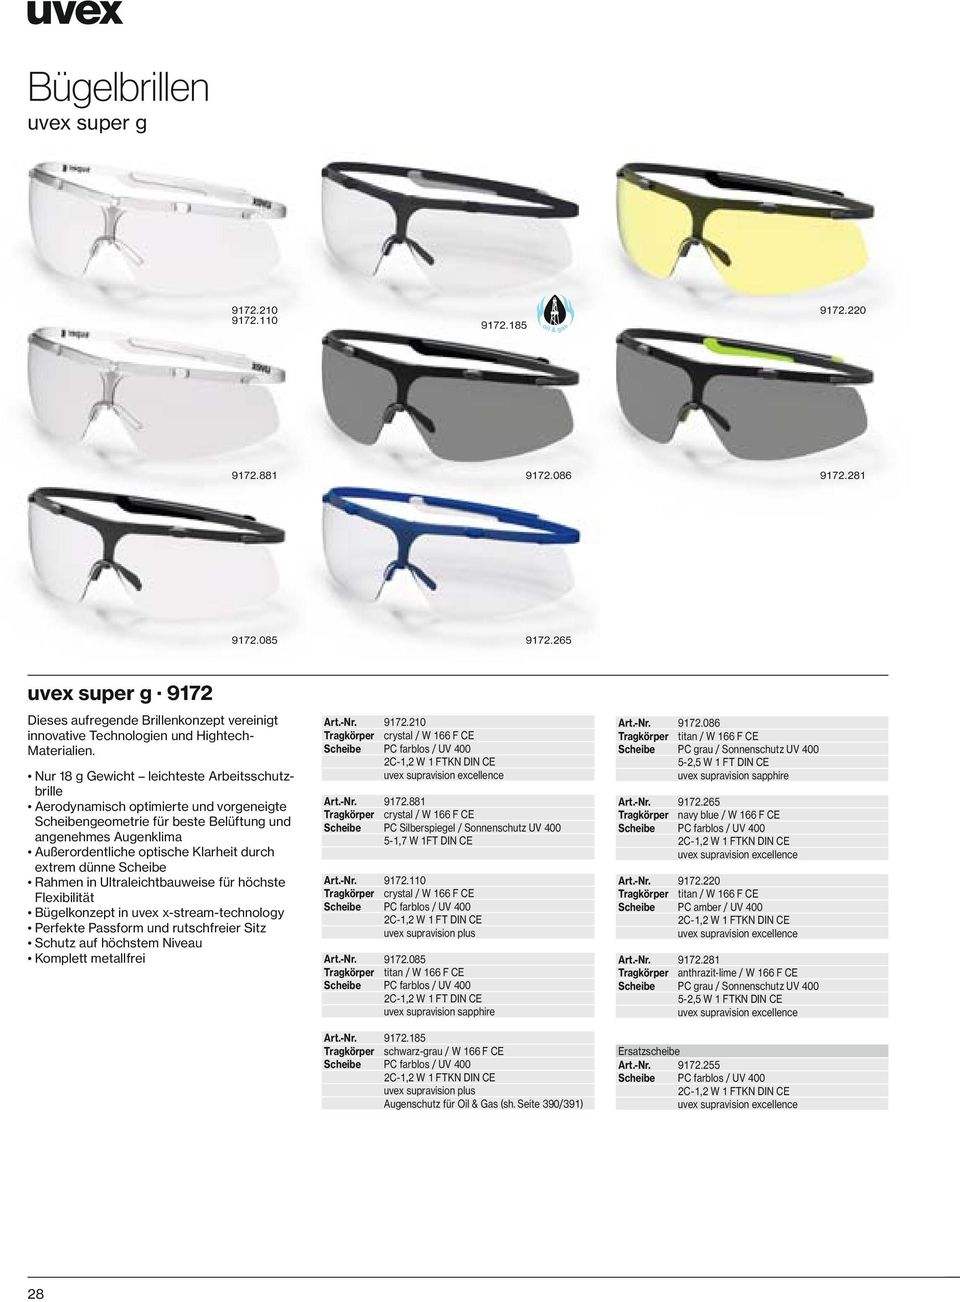 Nur 18 g Gewicht leichteste Arbeitsschutzbrille Aerodynamisch optimierte und vorgeneigte Scheibengeometrie für beste Belüftung und angenehmes Augenklima Außerordentliche optische Klarheit durch